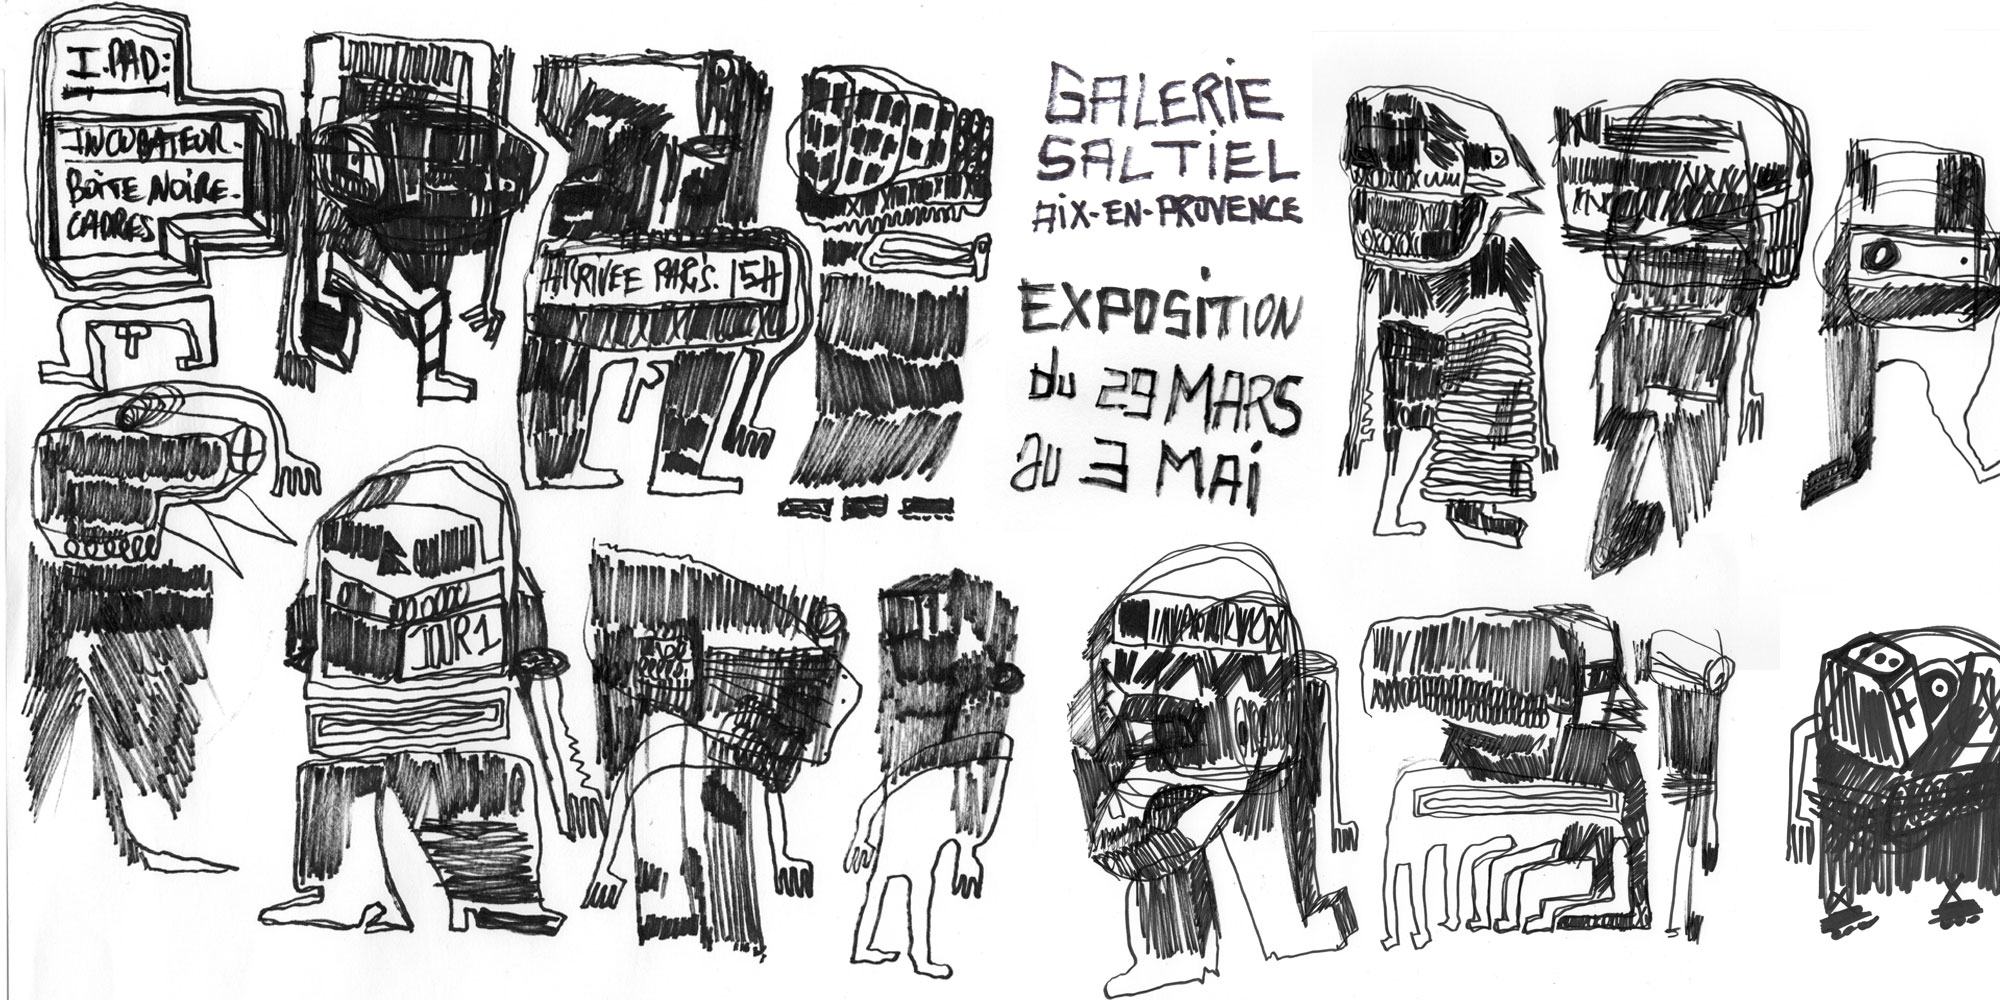 Expostion Galerie Saltiel Exposition //// Galerie Saltiel /// Aix en Provence du 29 Avril Au 2 Mai 2014
Vernissage le Samedi 29 Avril 2014 /// 10 rue Laurent Fauchier 13100 Aix-en-Provence.